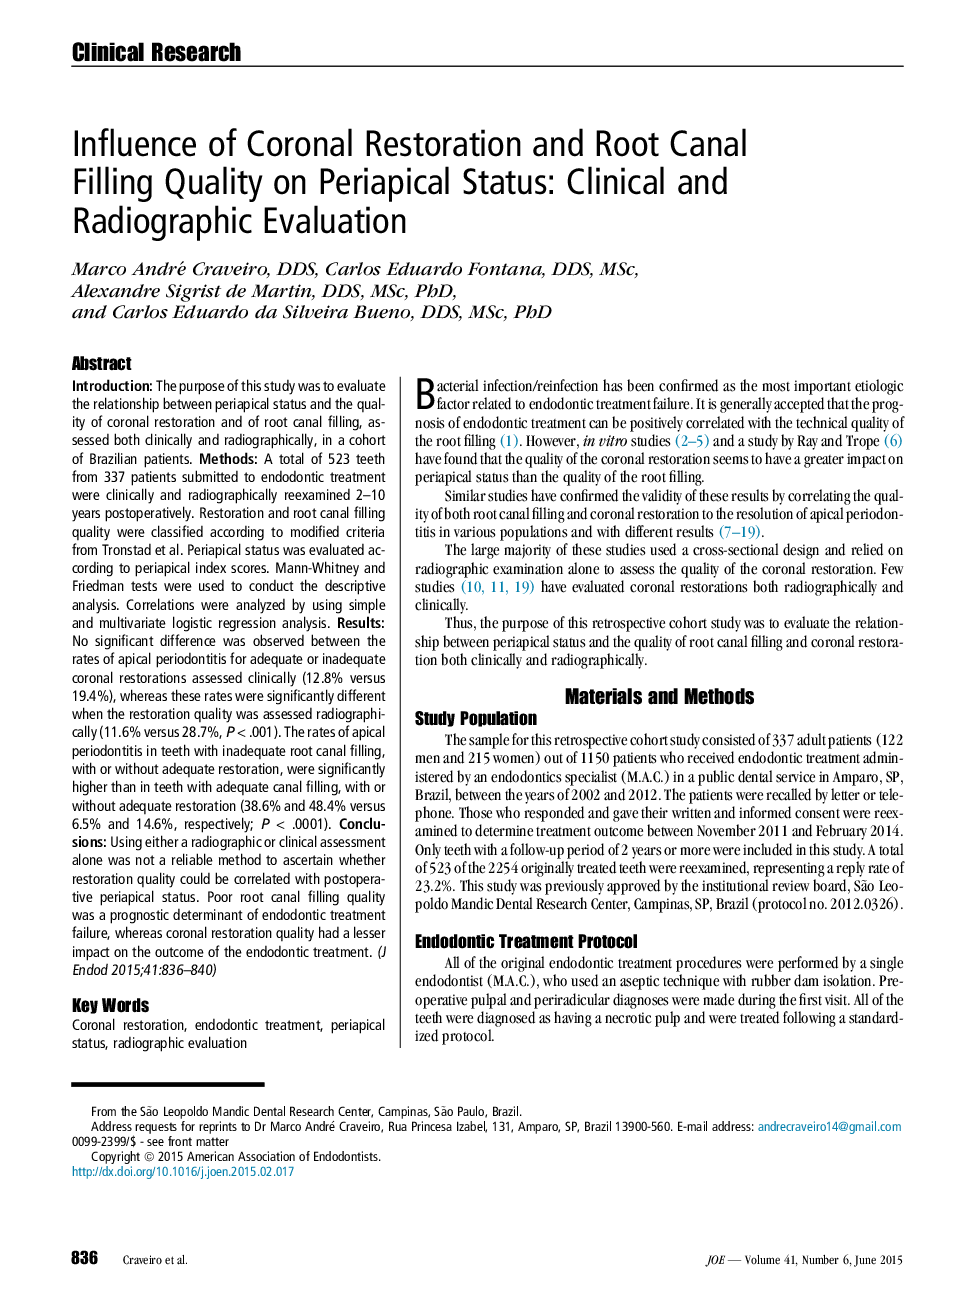 تأثیر بازسازی کرونال و کیفیت پر کردن کانال های ریشه در وضعیت پرایاپیکال: ارزیابی بالینی و رادیوگرافی 